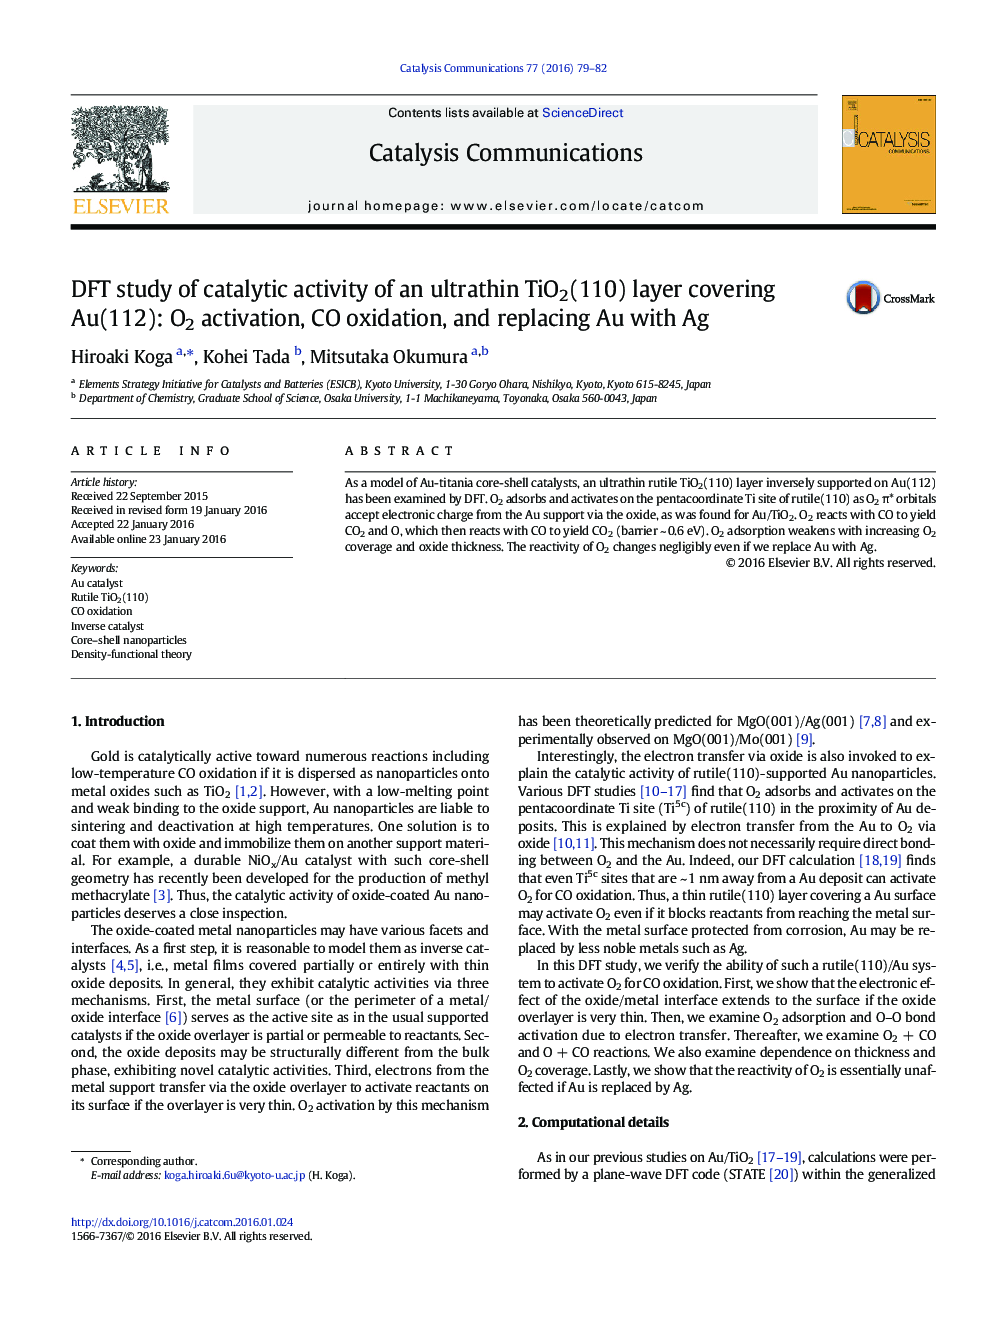 مطالعه DFT در مورد فعالیت کاتالیزوری پوشش لایه TiO2 (110) آلومینیوم Au (112): فعال سازی O2، اکسیداسیون CO و جایگزینی Au با Ag